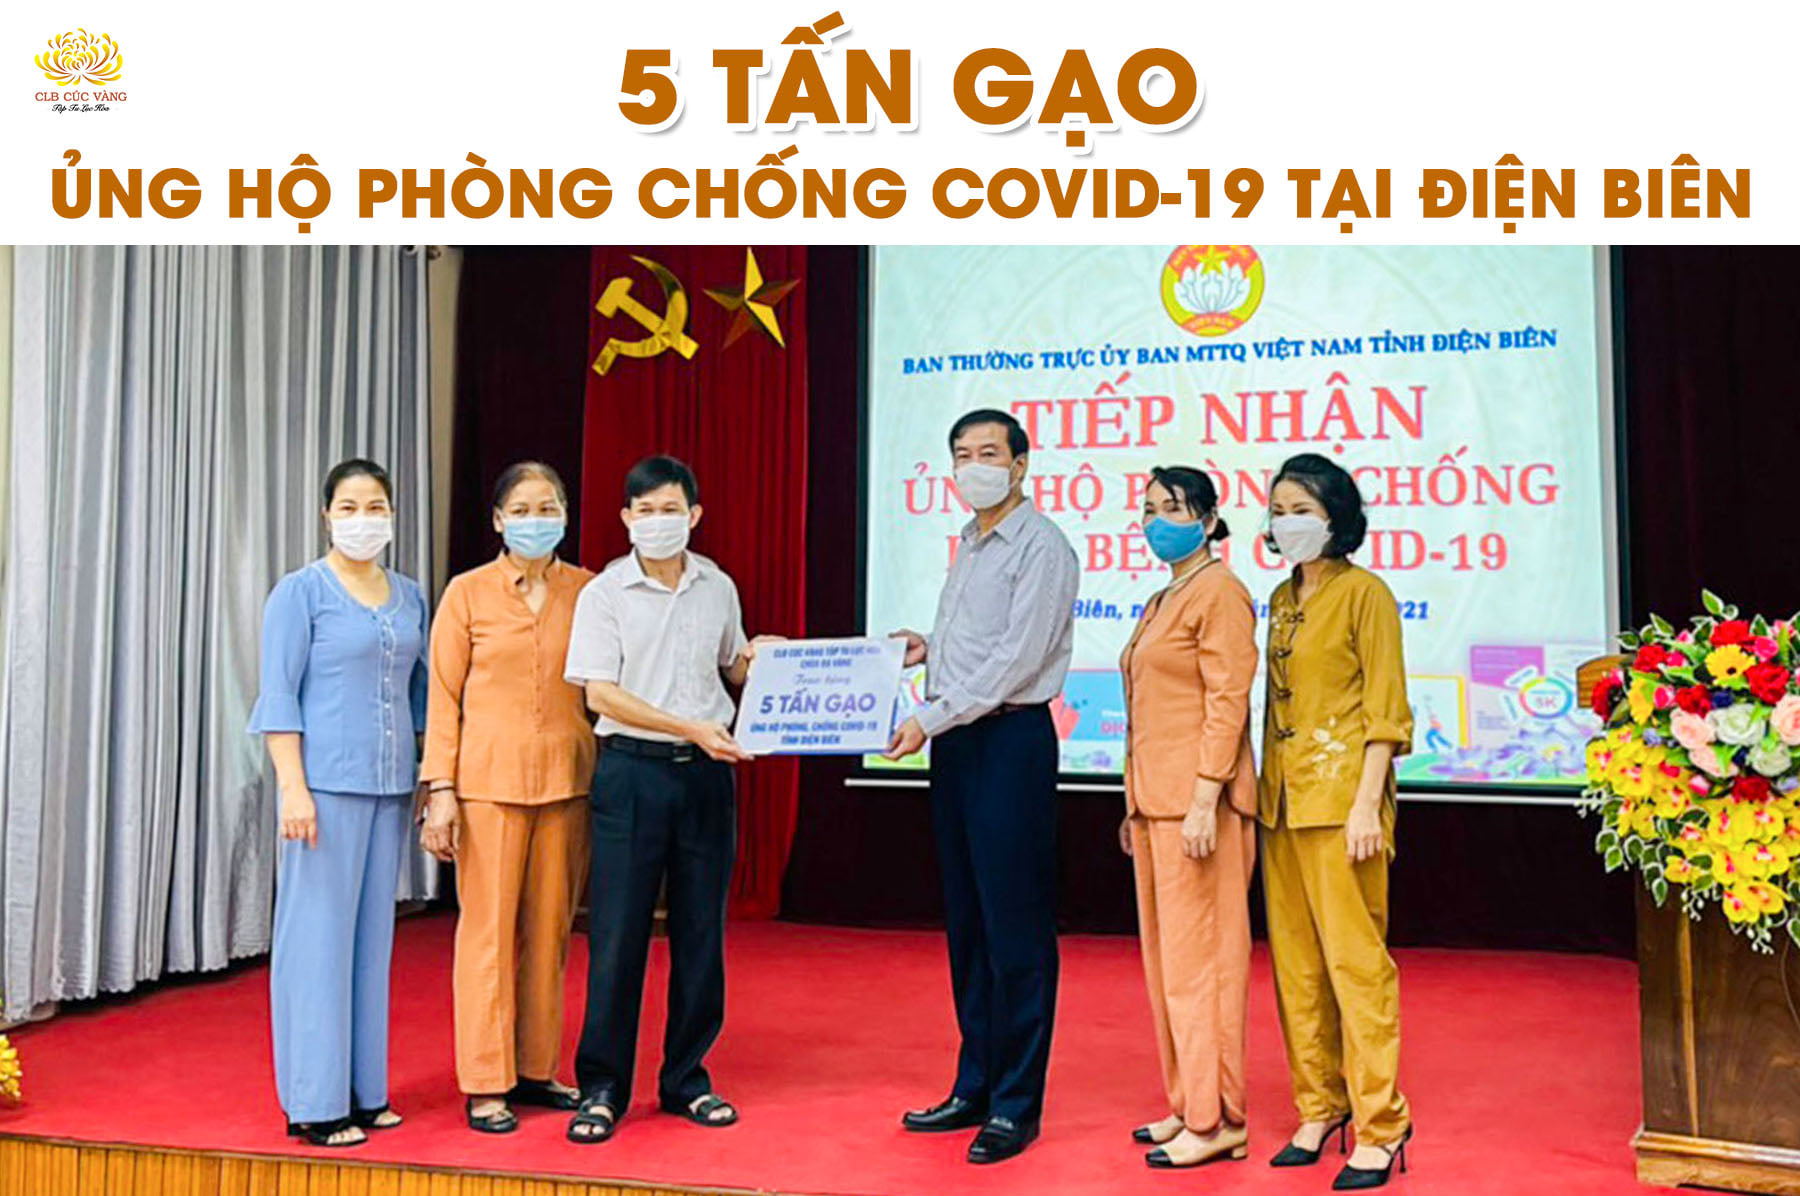 5 tấn gạo được Phật tử CLB Cúc Vàng ủng hộ cho công tác phòng, chống dịch tại Điện Biên